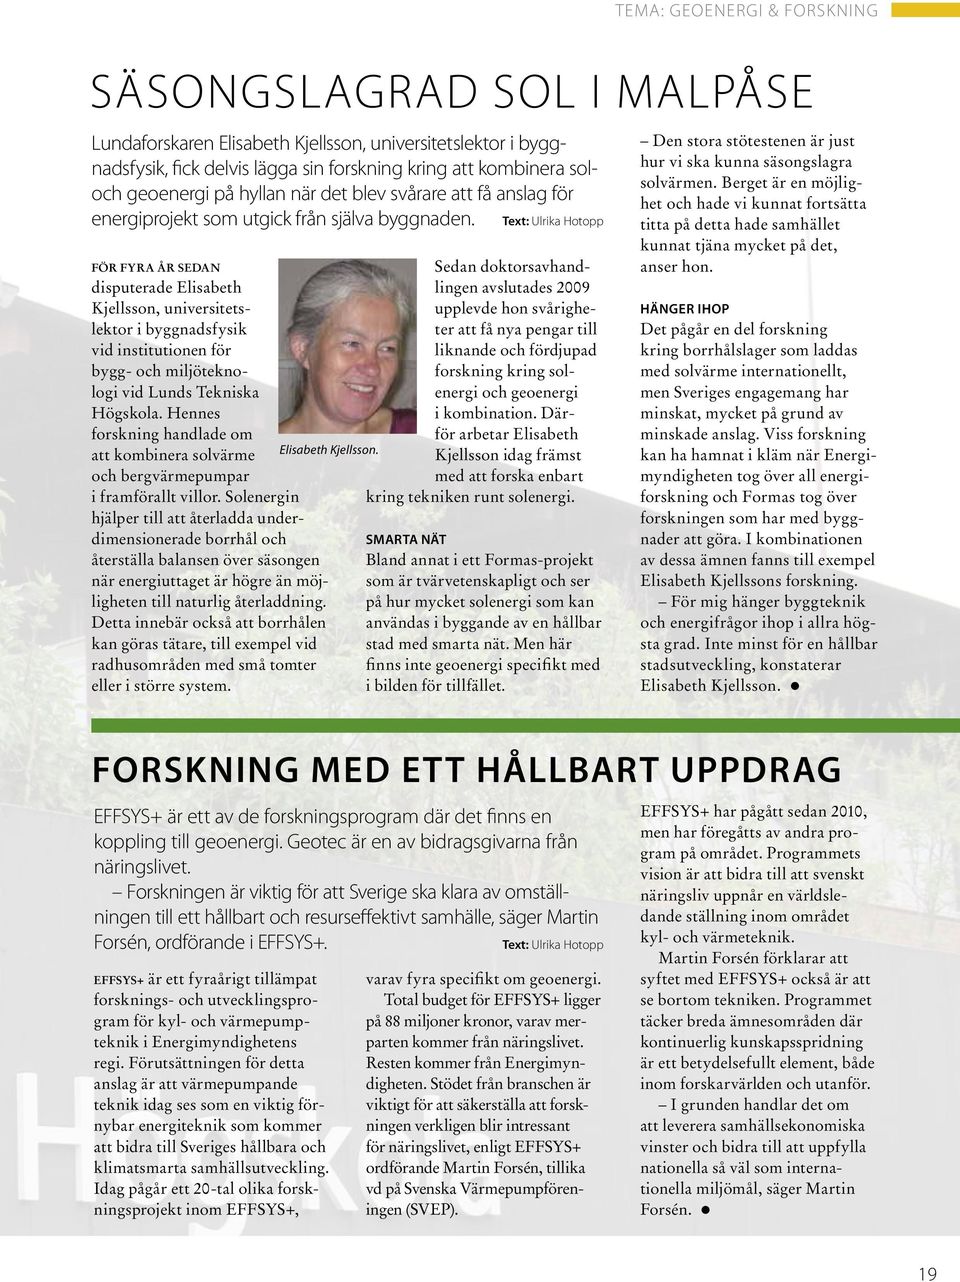 Text: Ulrika Hotopp FÖR FYRA ÅR SEDAN disputerade Elisabeth Kjellsson, universitetslektor i byggnadsfysik vid institutionen för bygg- och miljöteknologi vid Lunds Tekniska Högskola.